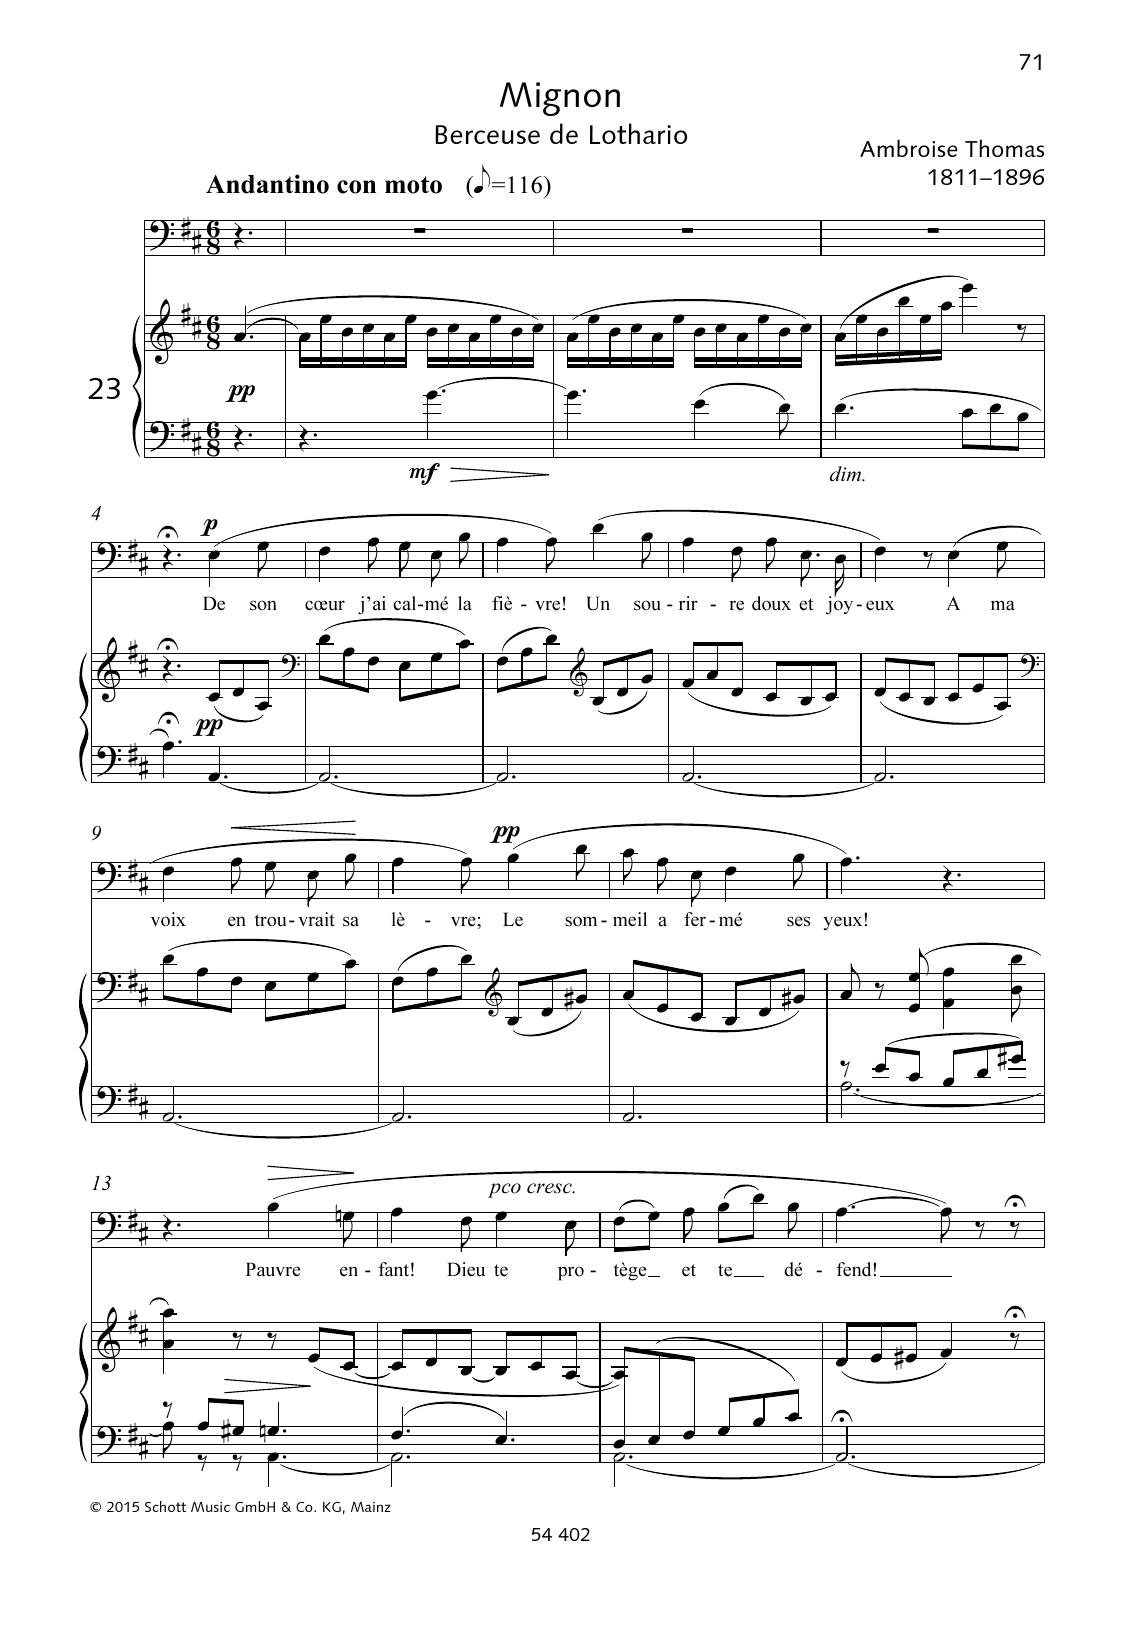 Ambroise Thomas De son coeur j'ai calmé la fièvre! sheet music notes and chords arranged for Piano & Vocal